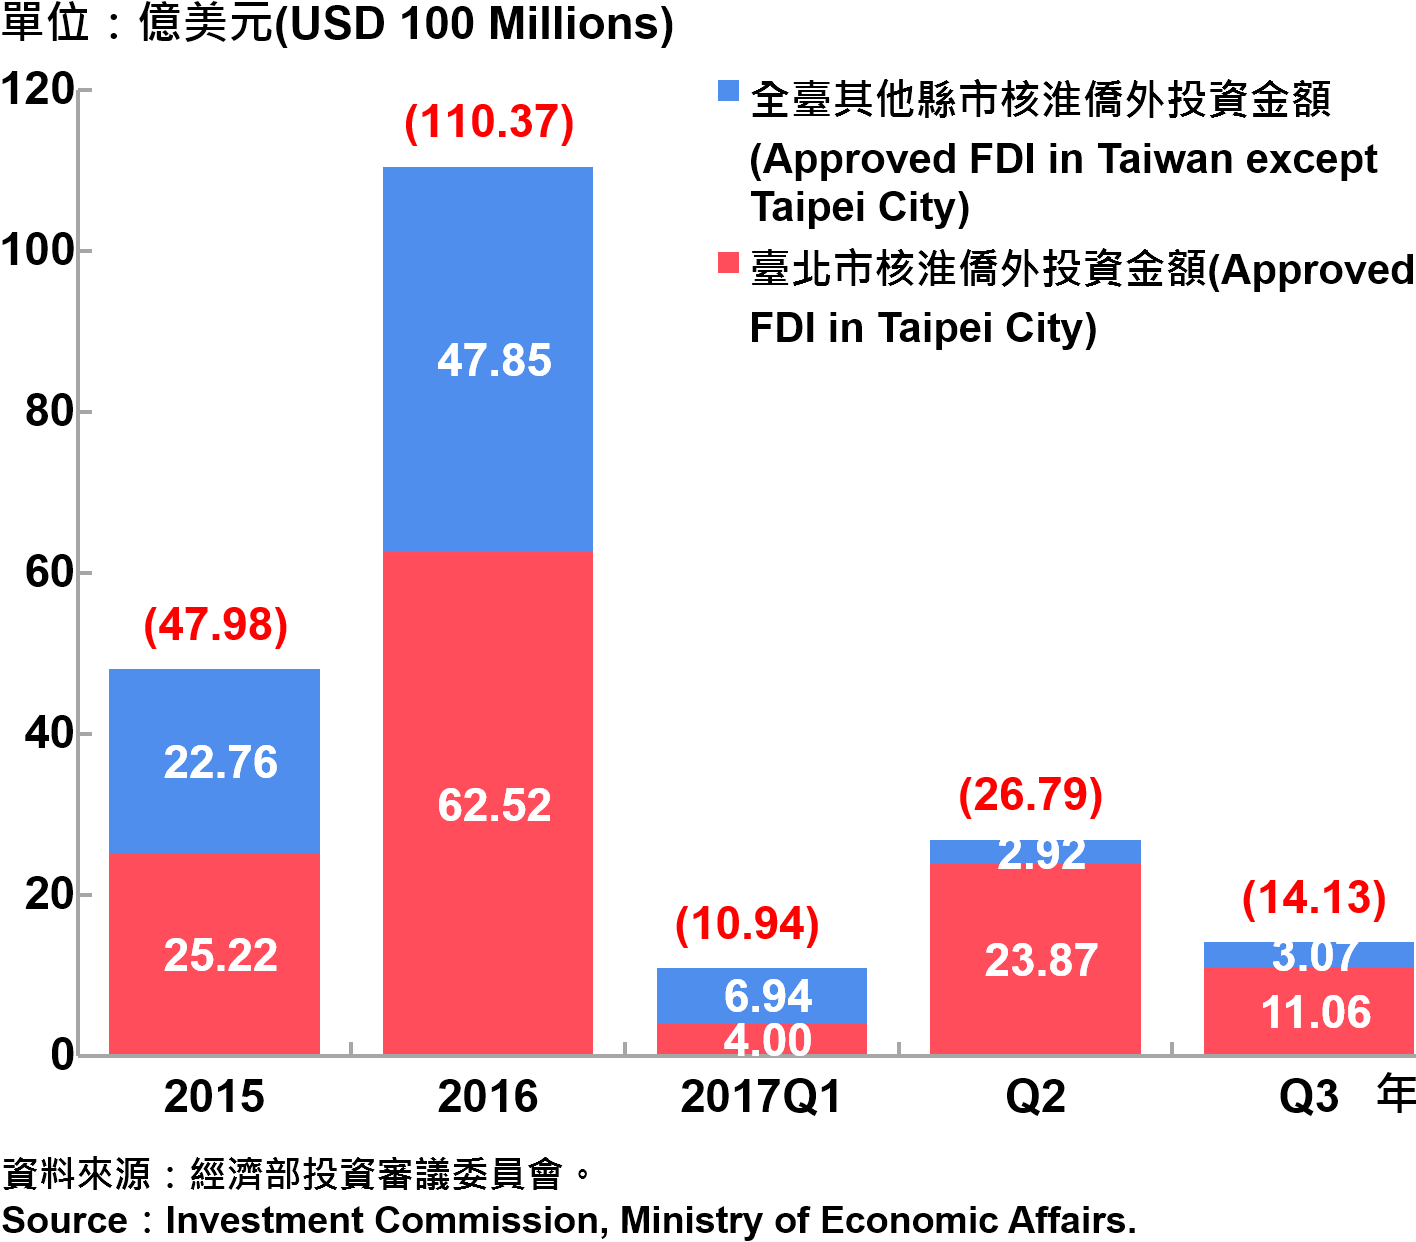 圖13、臺北市與全國僑外投資金額—2017Q3 Foreign Direct Investment （FDI） in Taipei City and Taiwan—2017Q3